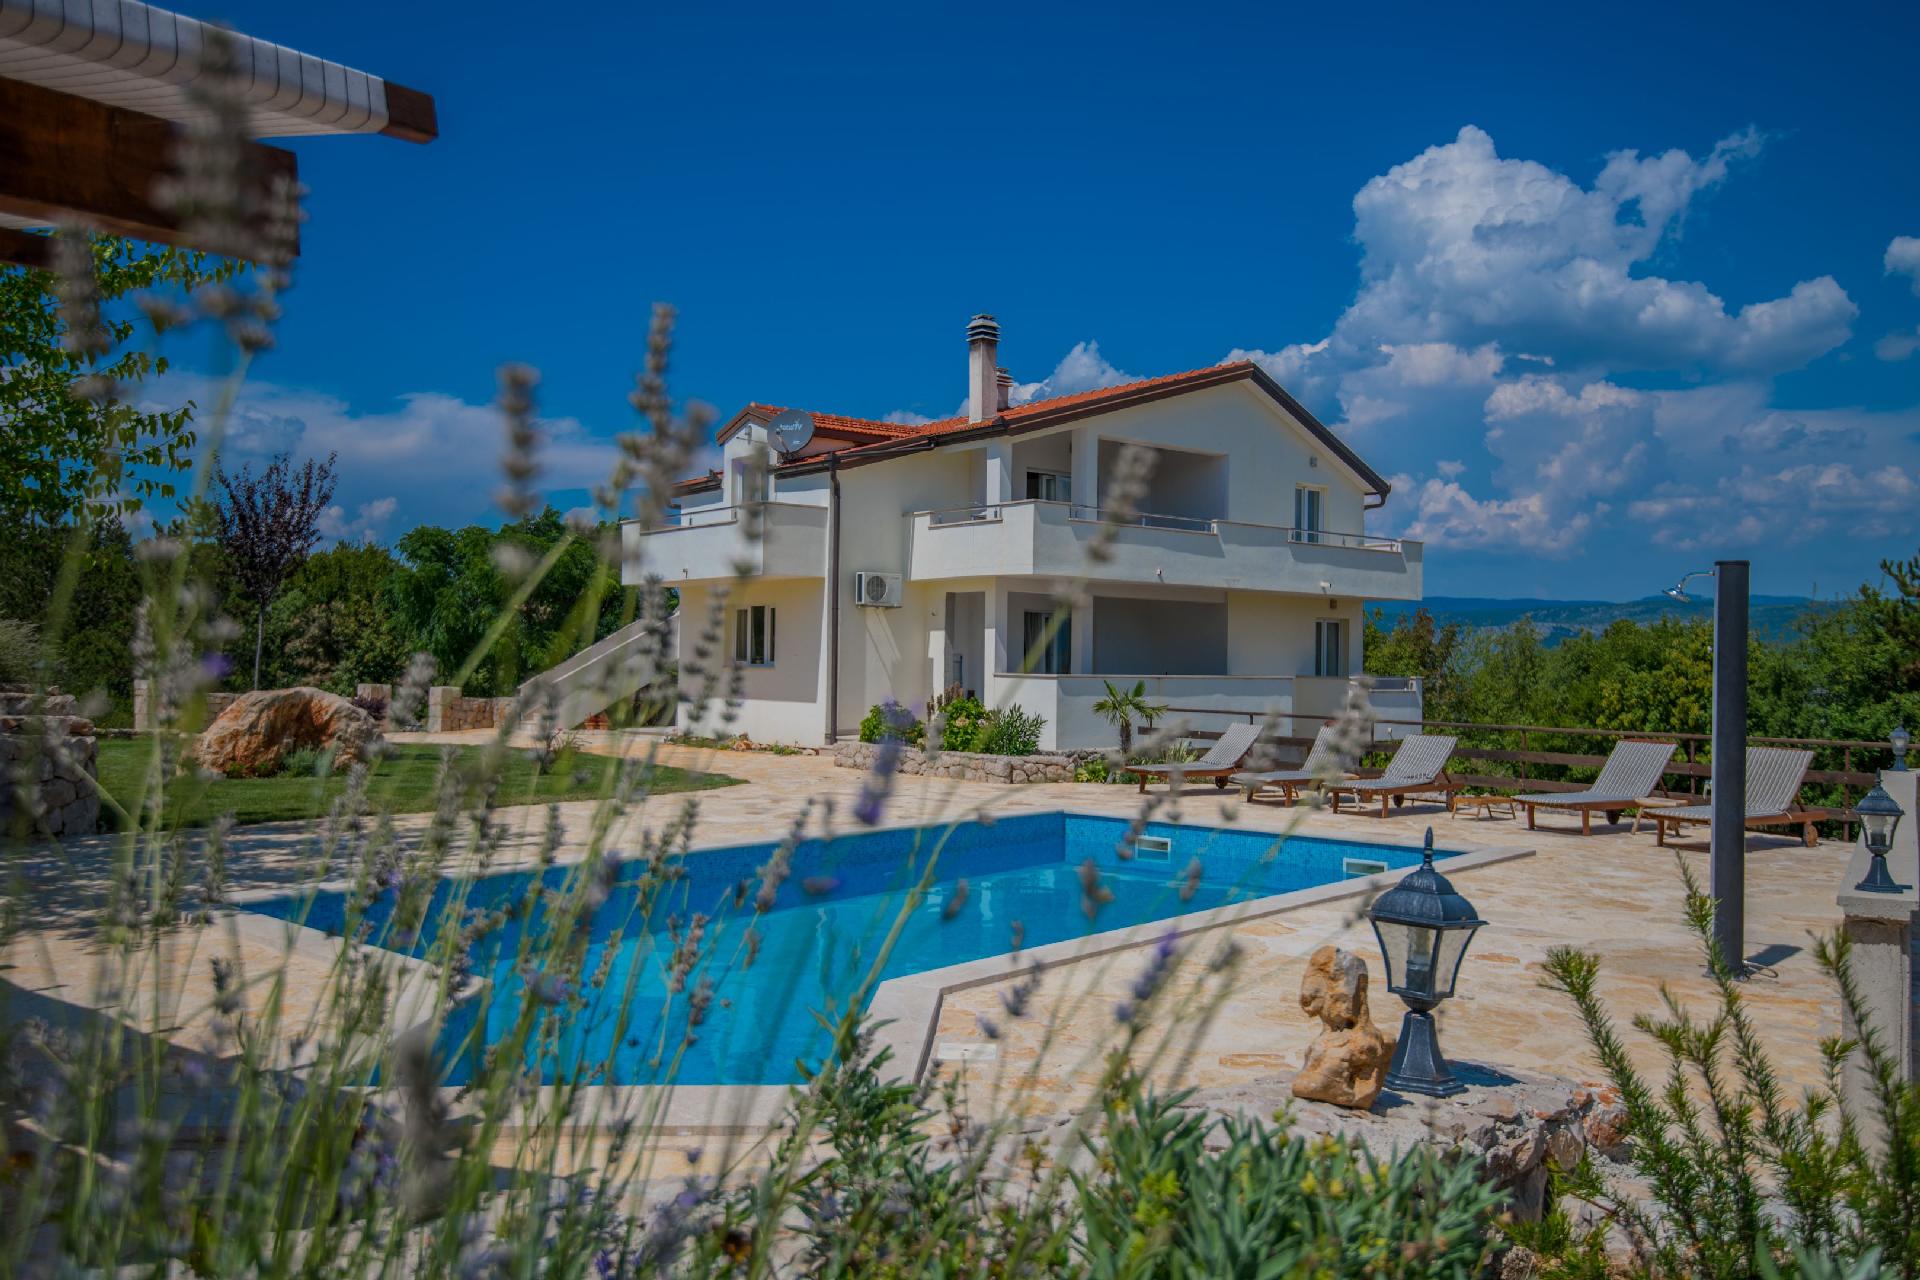 Ferienhaus mit Privatpool für 10 Personen ca. Ferienwohnung in Kroatien